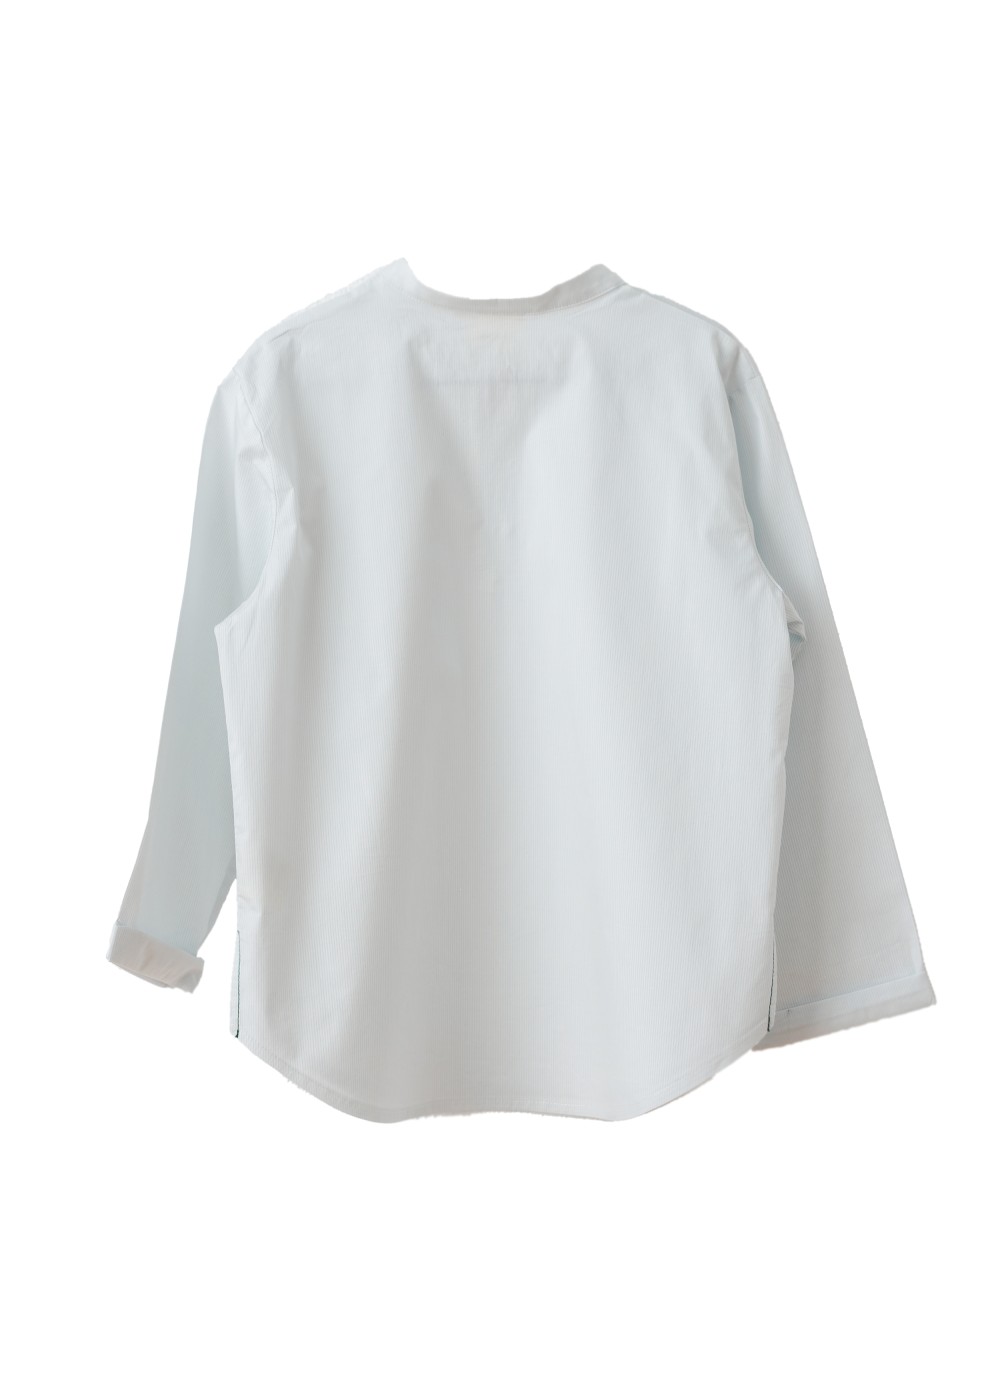 Langarm-Hemd Adler in Weiß, elastische Baumwolle, Knopfleiste